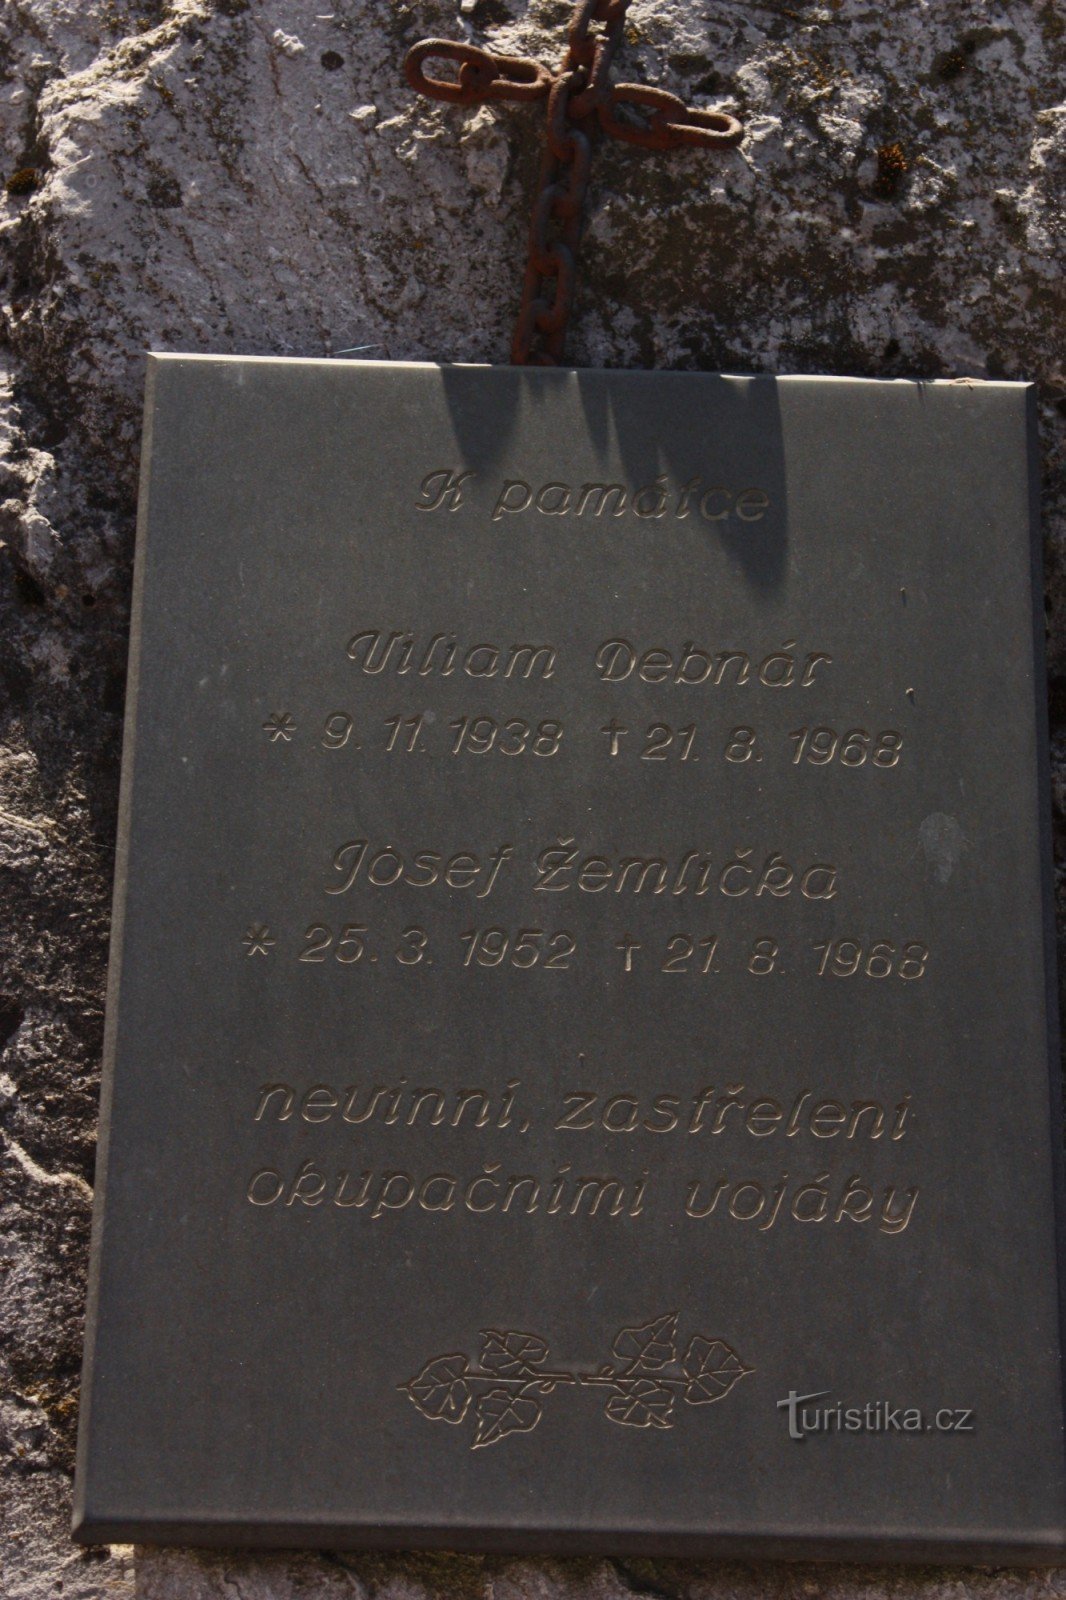 Đài tưởng niệm các nạn nhân ngày 21 tháng 8 năm 1968 ở Brno - Líšní